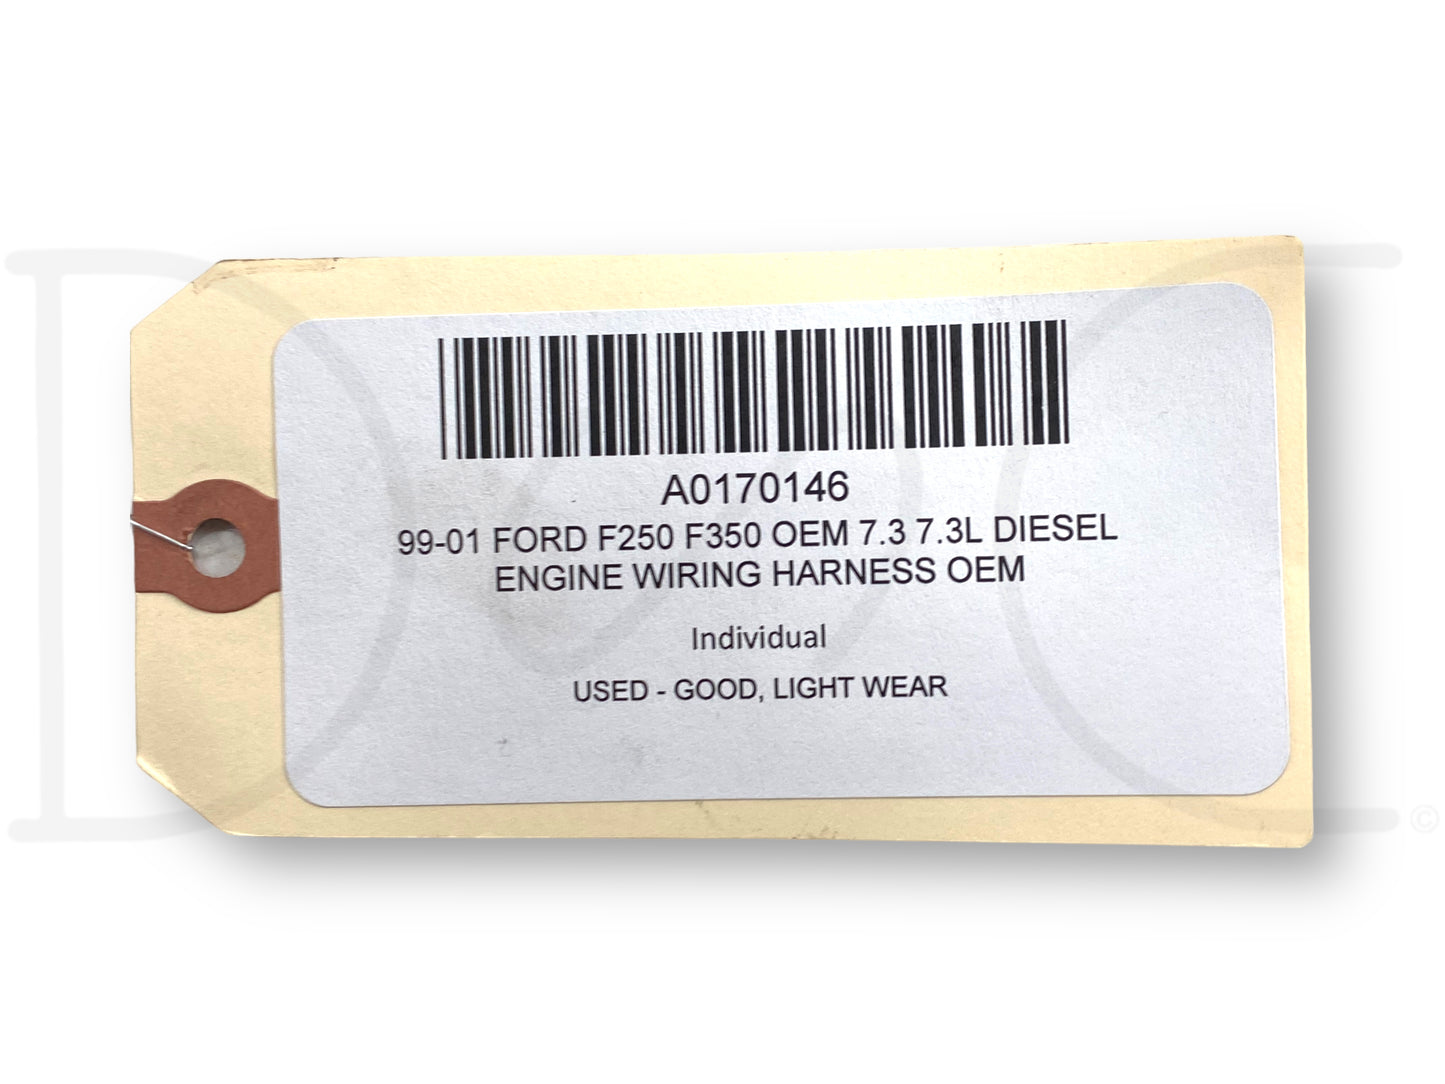 99-01 Ford F250 F350 OEM 7.3 7.3L Diesel Engine Wiring Harness OEM